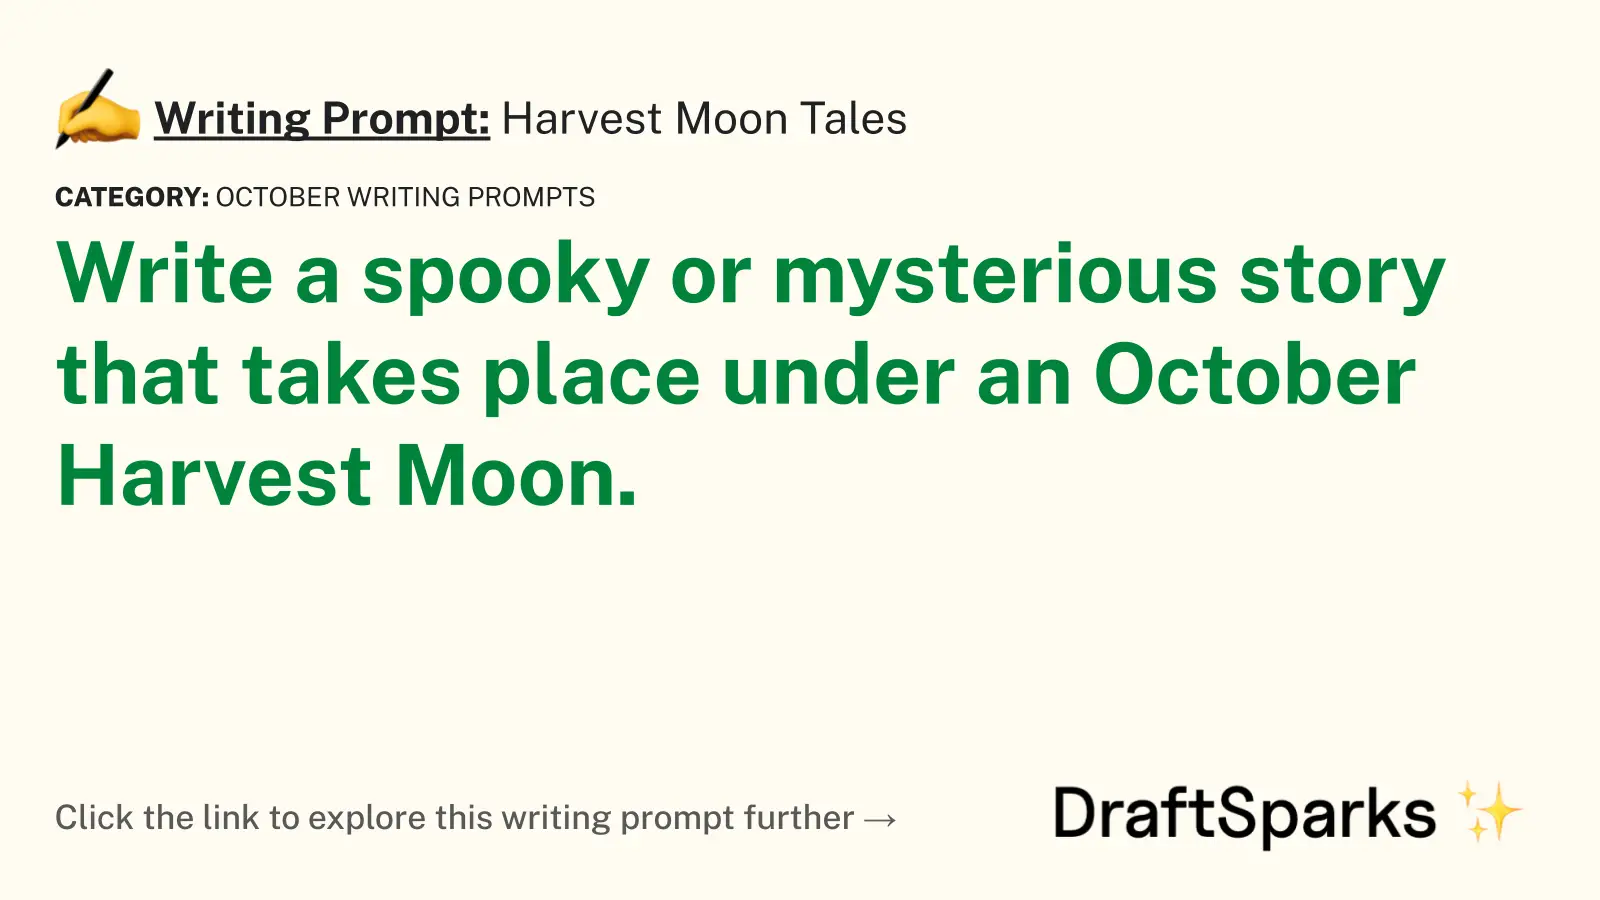 Harvest Moon Tales